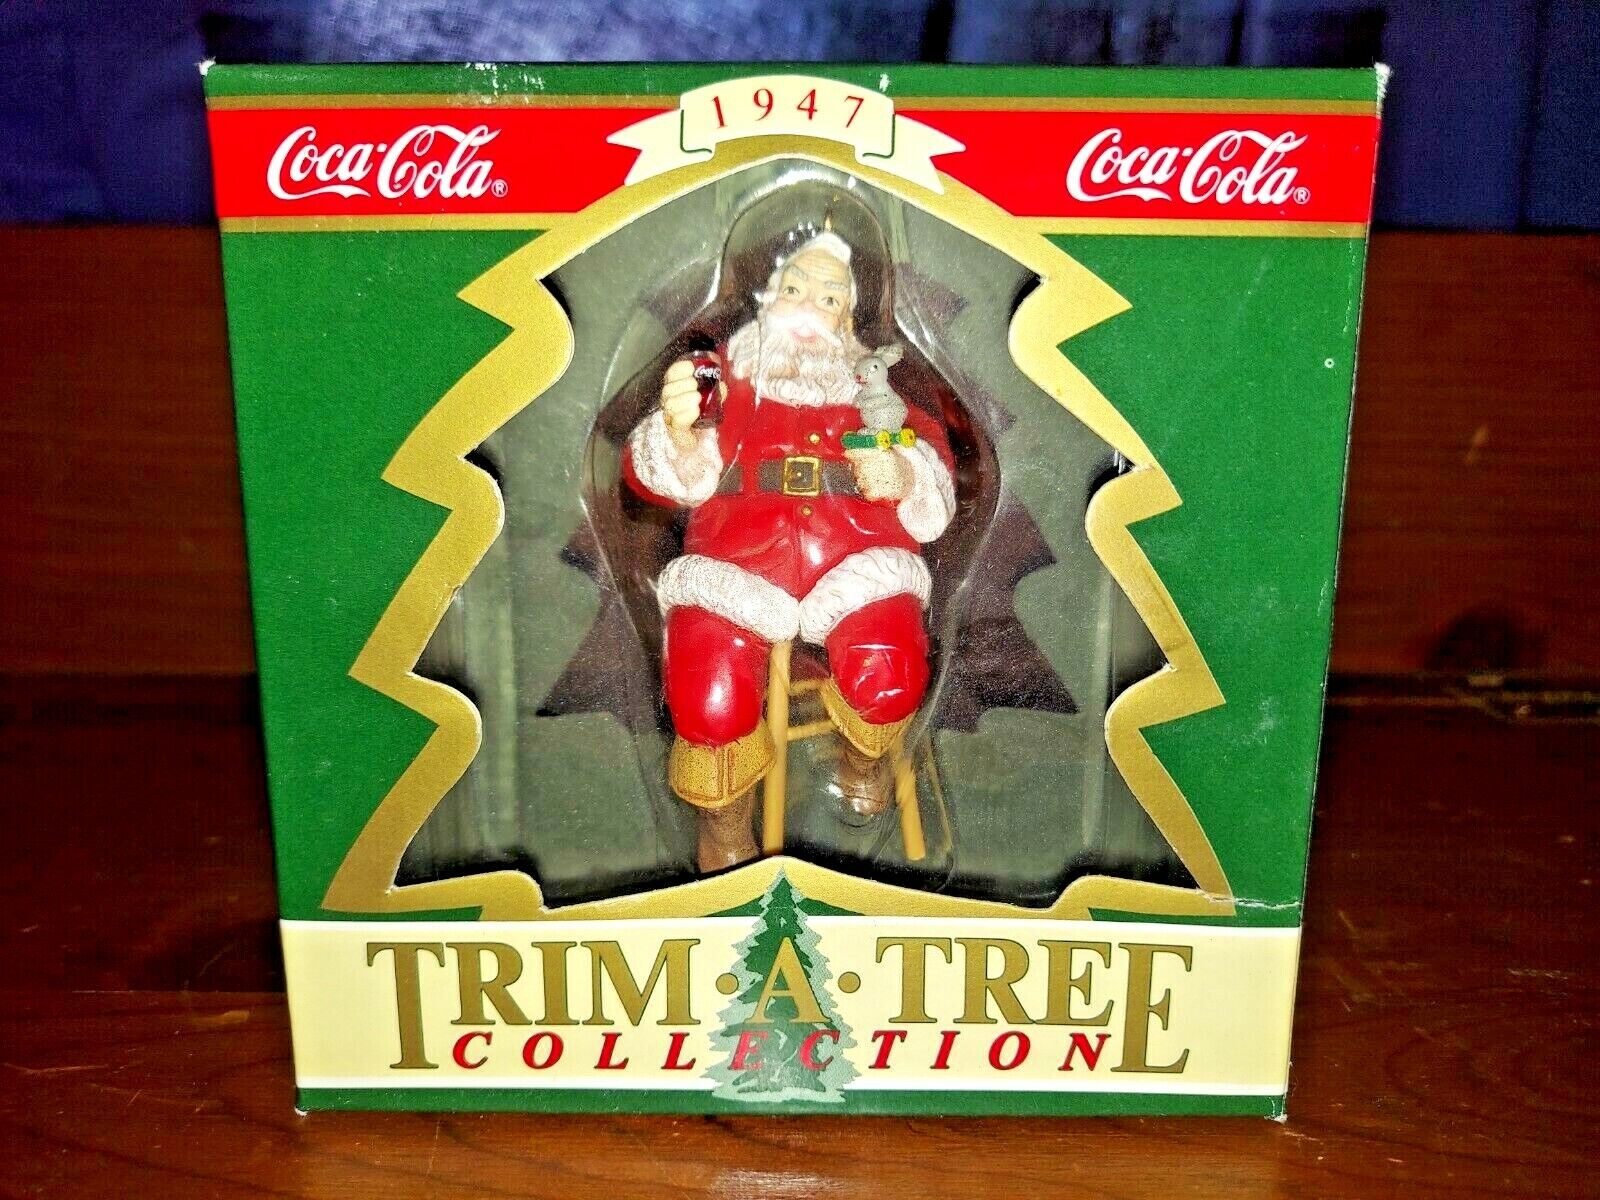 1990 Coca Cola Trim a Tree 1947 Santa Claus Christmas Ornament